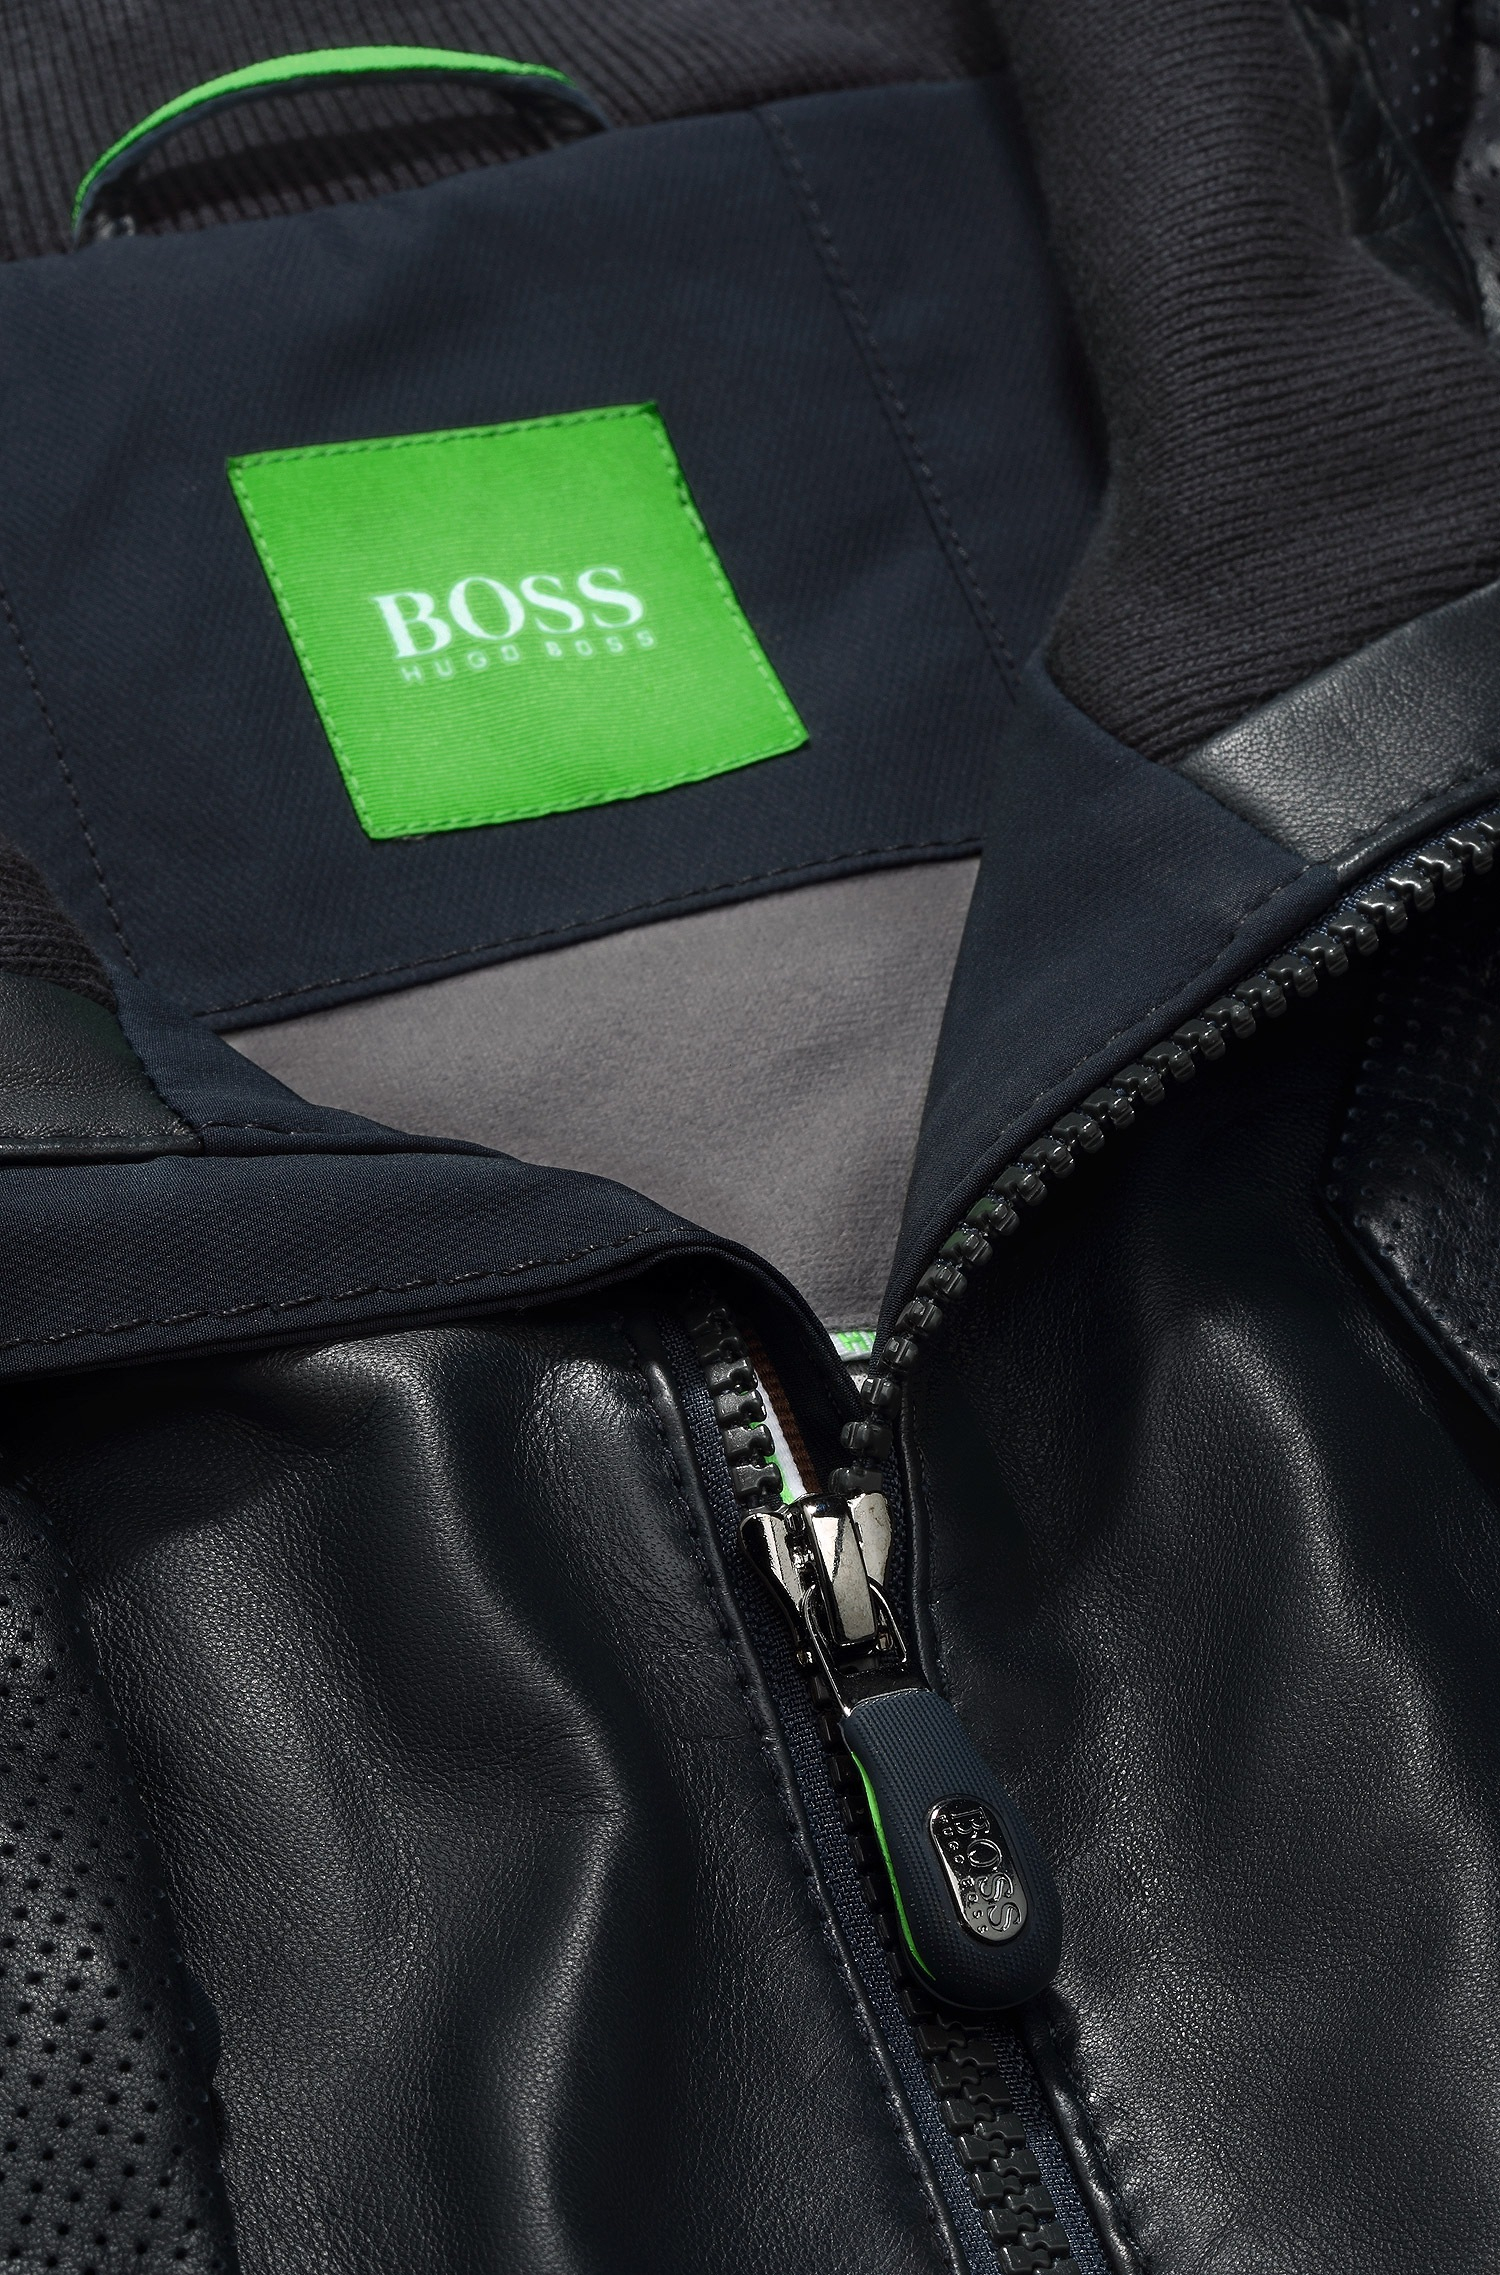 خليط مدرب الفعلية الحماس بارد مؤسس hugo boss green leather jacket -  miraclesuds.com